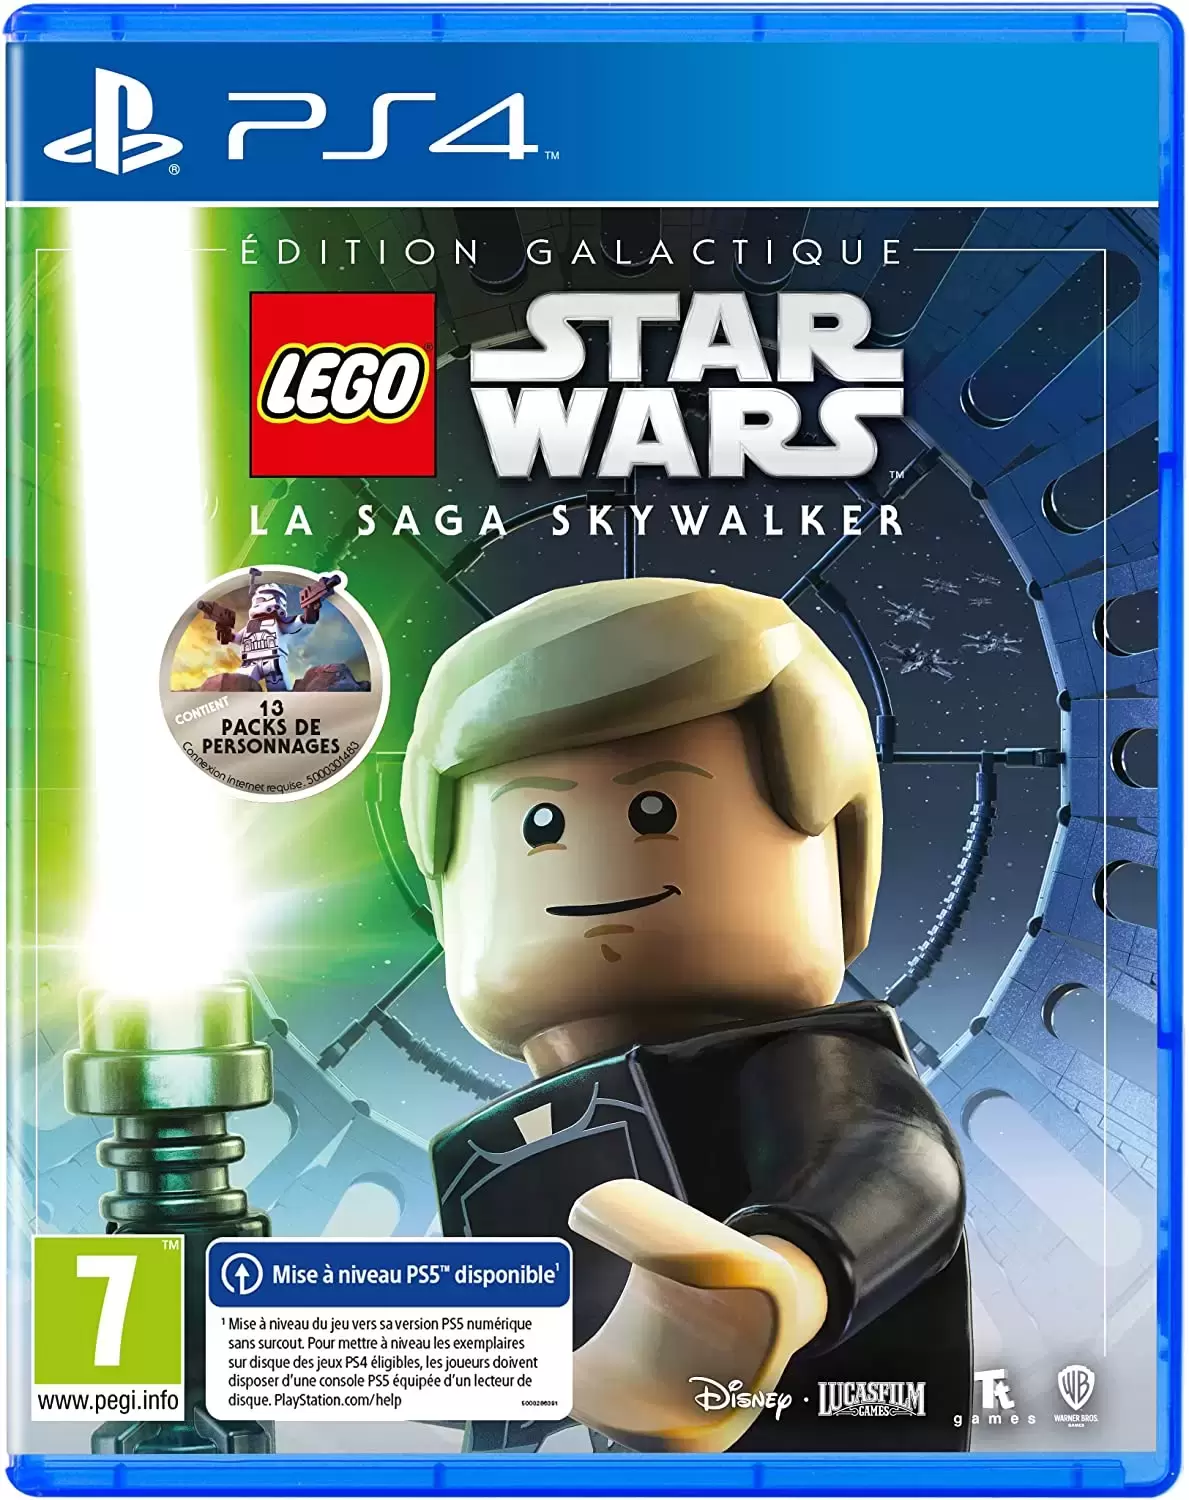 PS4 Games - Lego Star Wars - La Saga Skywalker - Edition Galactique